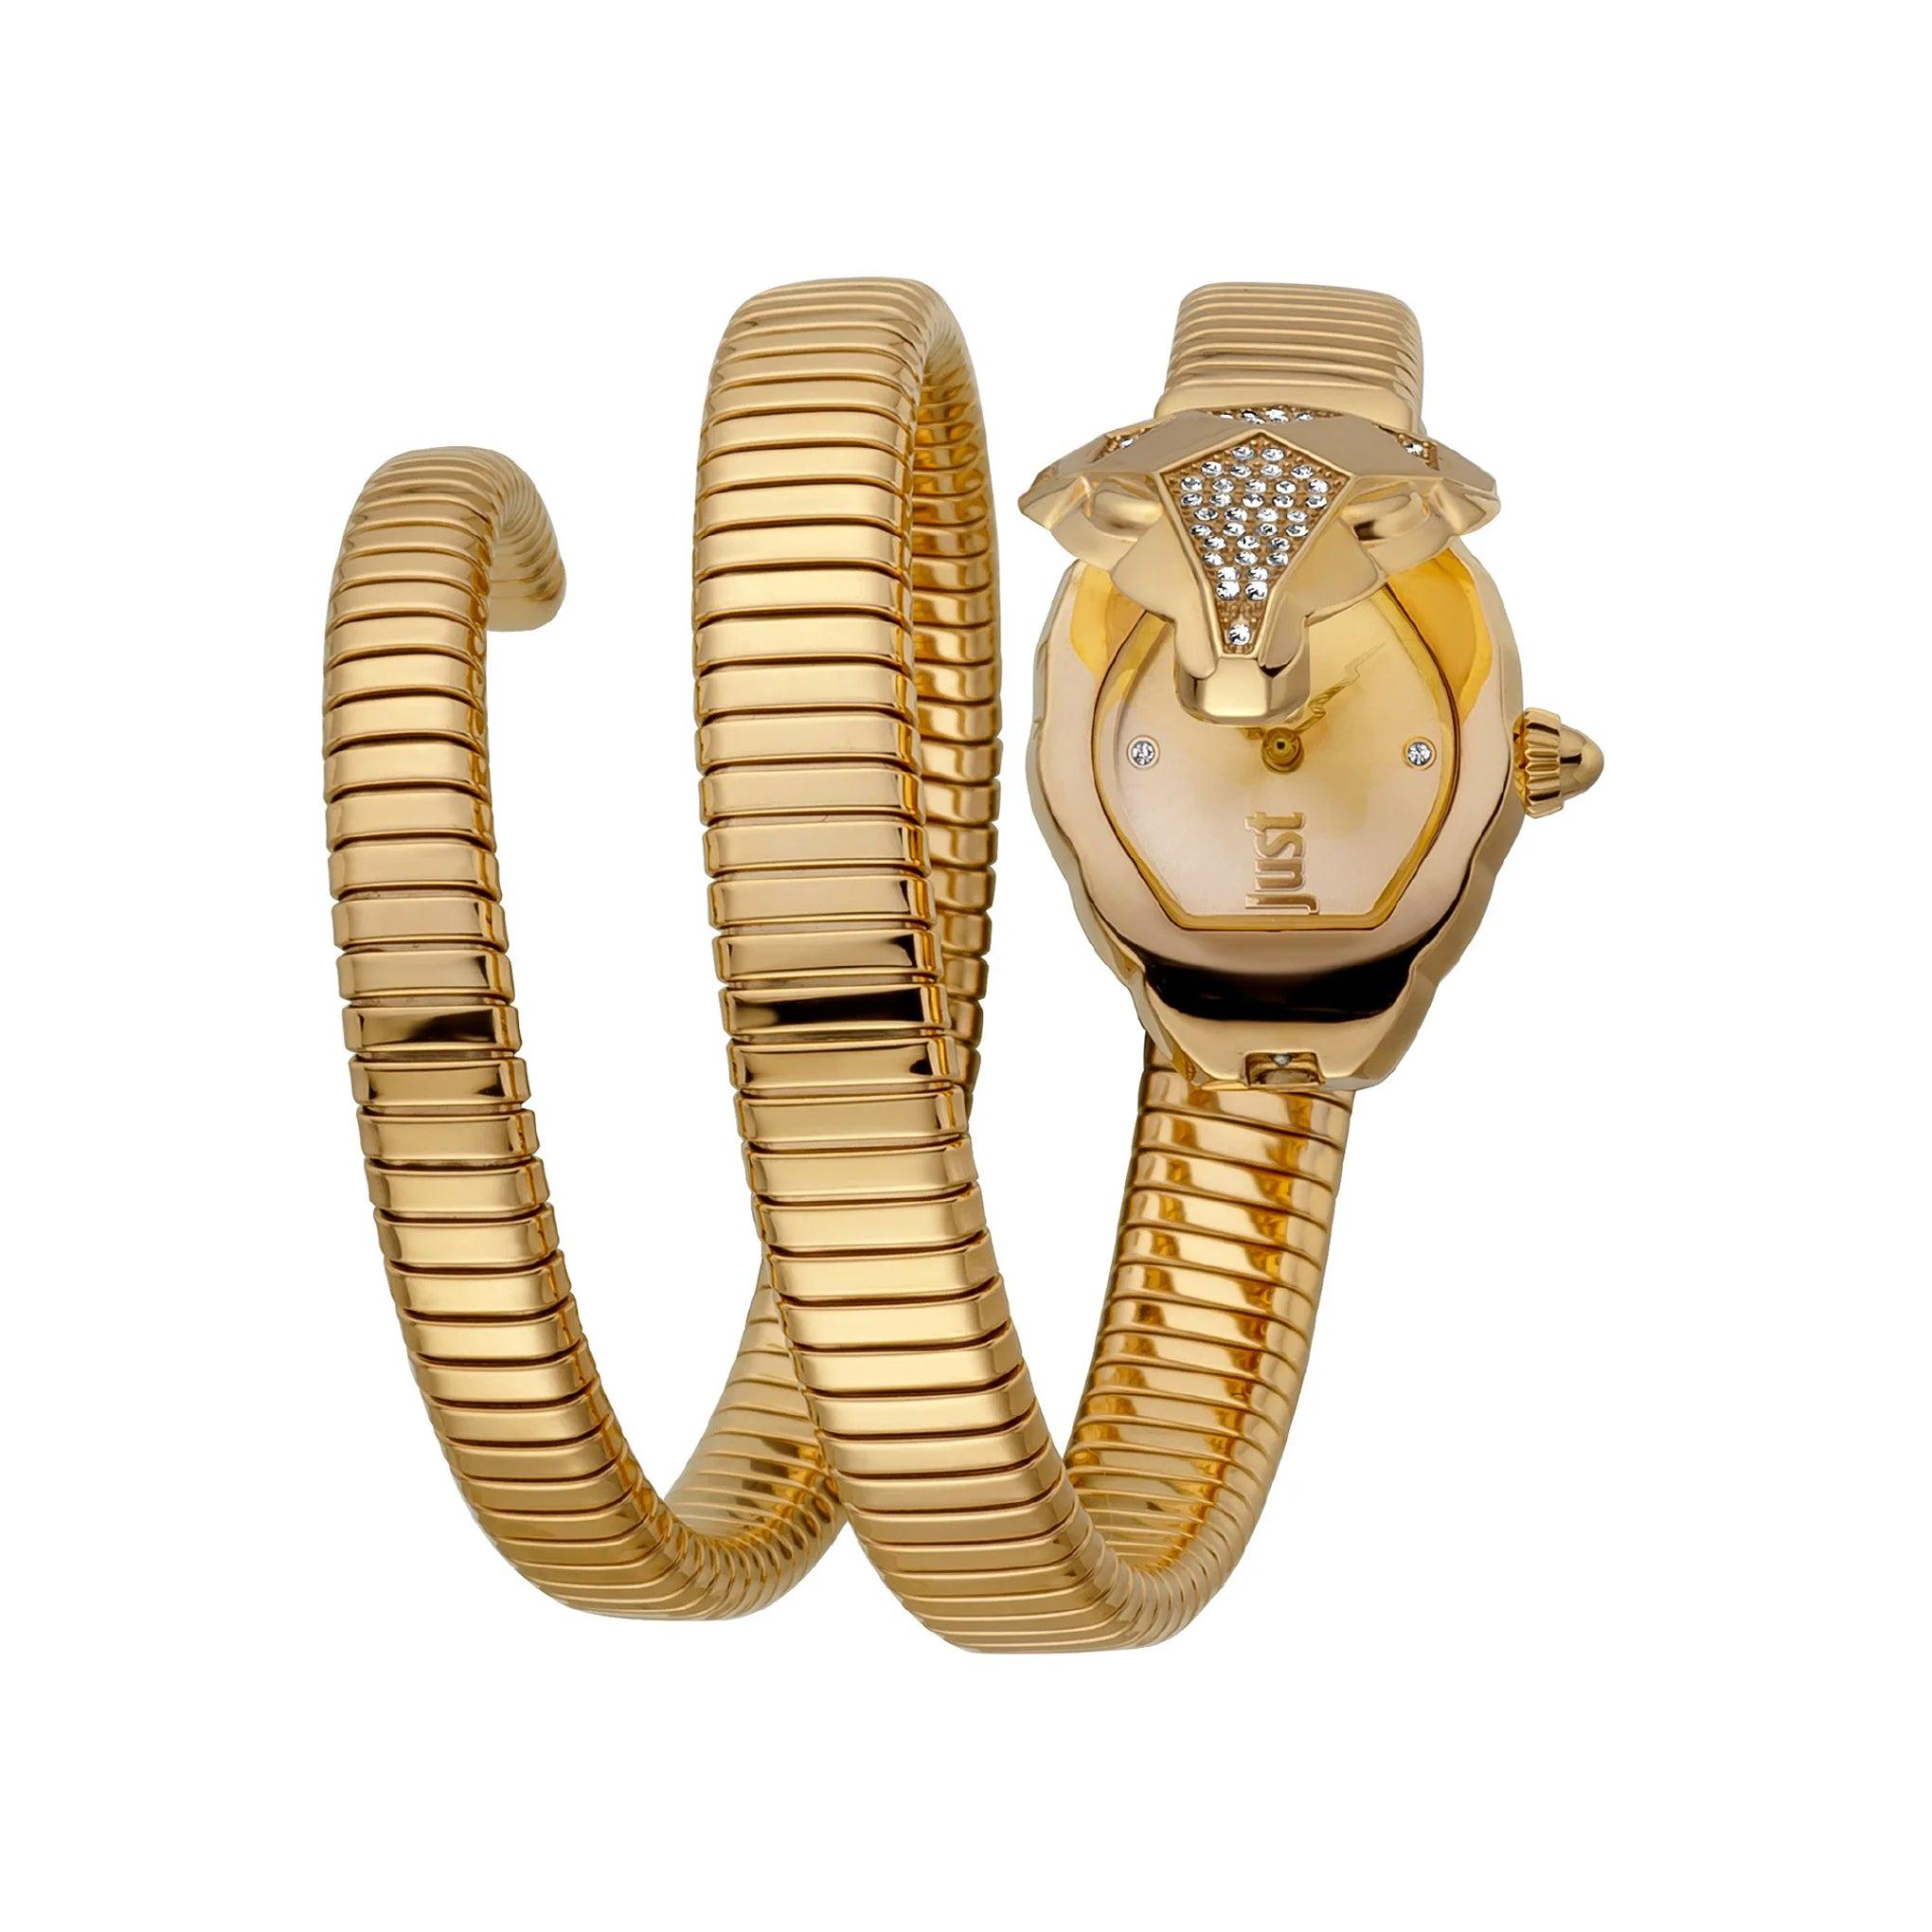 ساعة يد نسائية بشكل ثعبان - ذهبي - بحزام معدني مقاوم للصدأ جست كافالي Just Cavalli Nascosto Snake Yellow Gold Watch